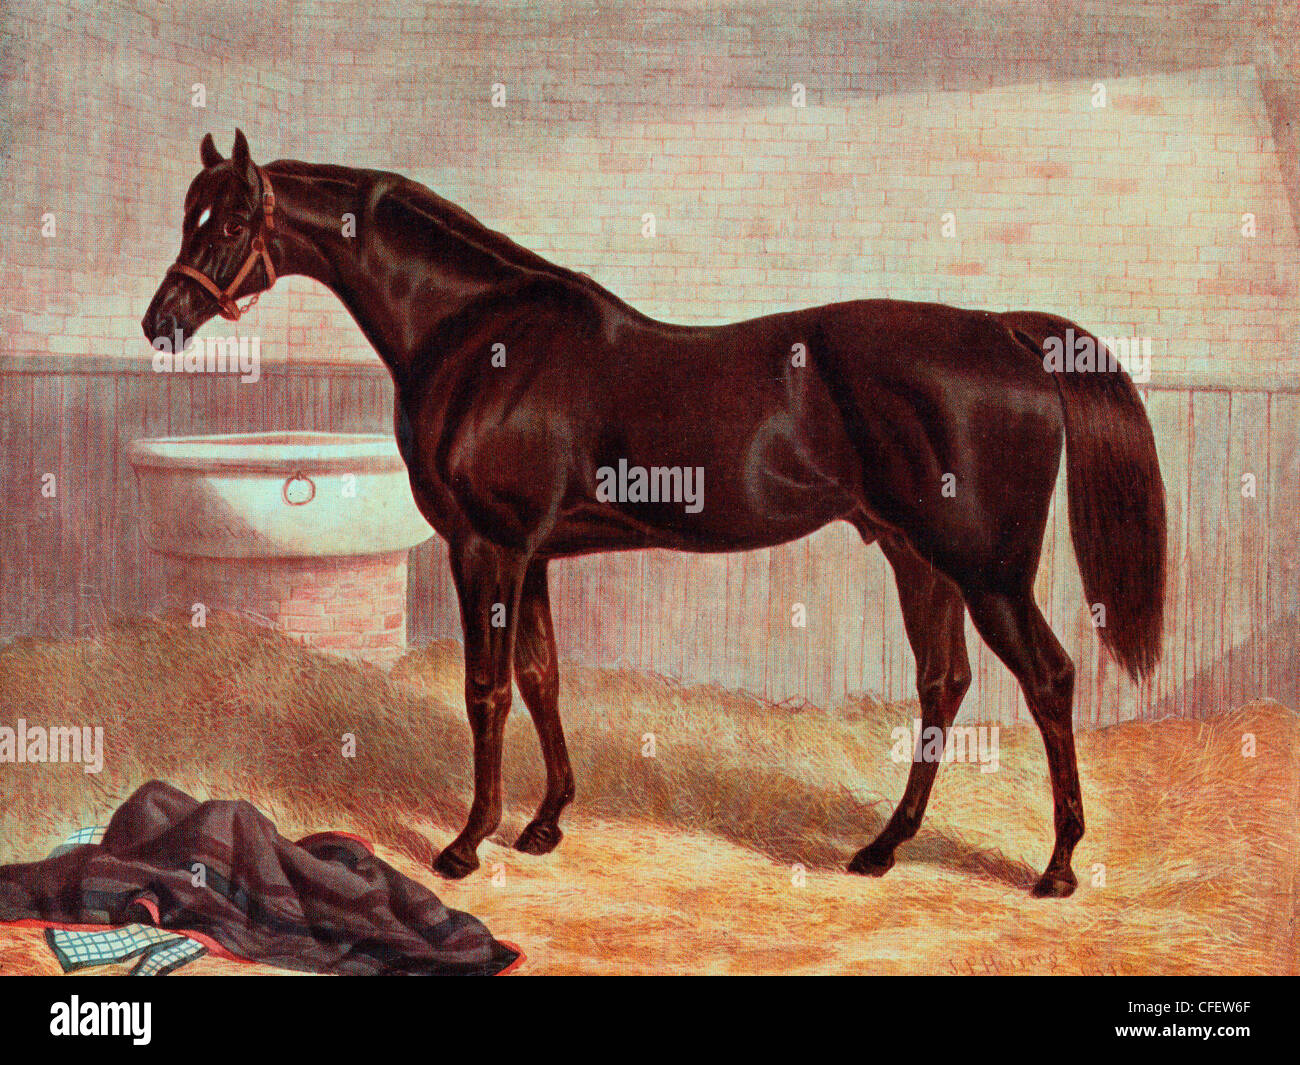 Gladiator - racehorse, England circa 1836 Stock Photo